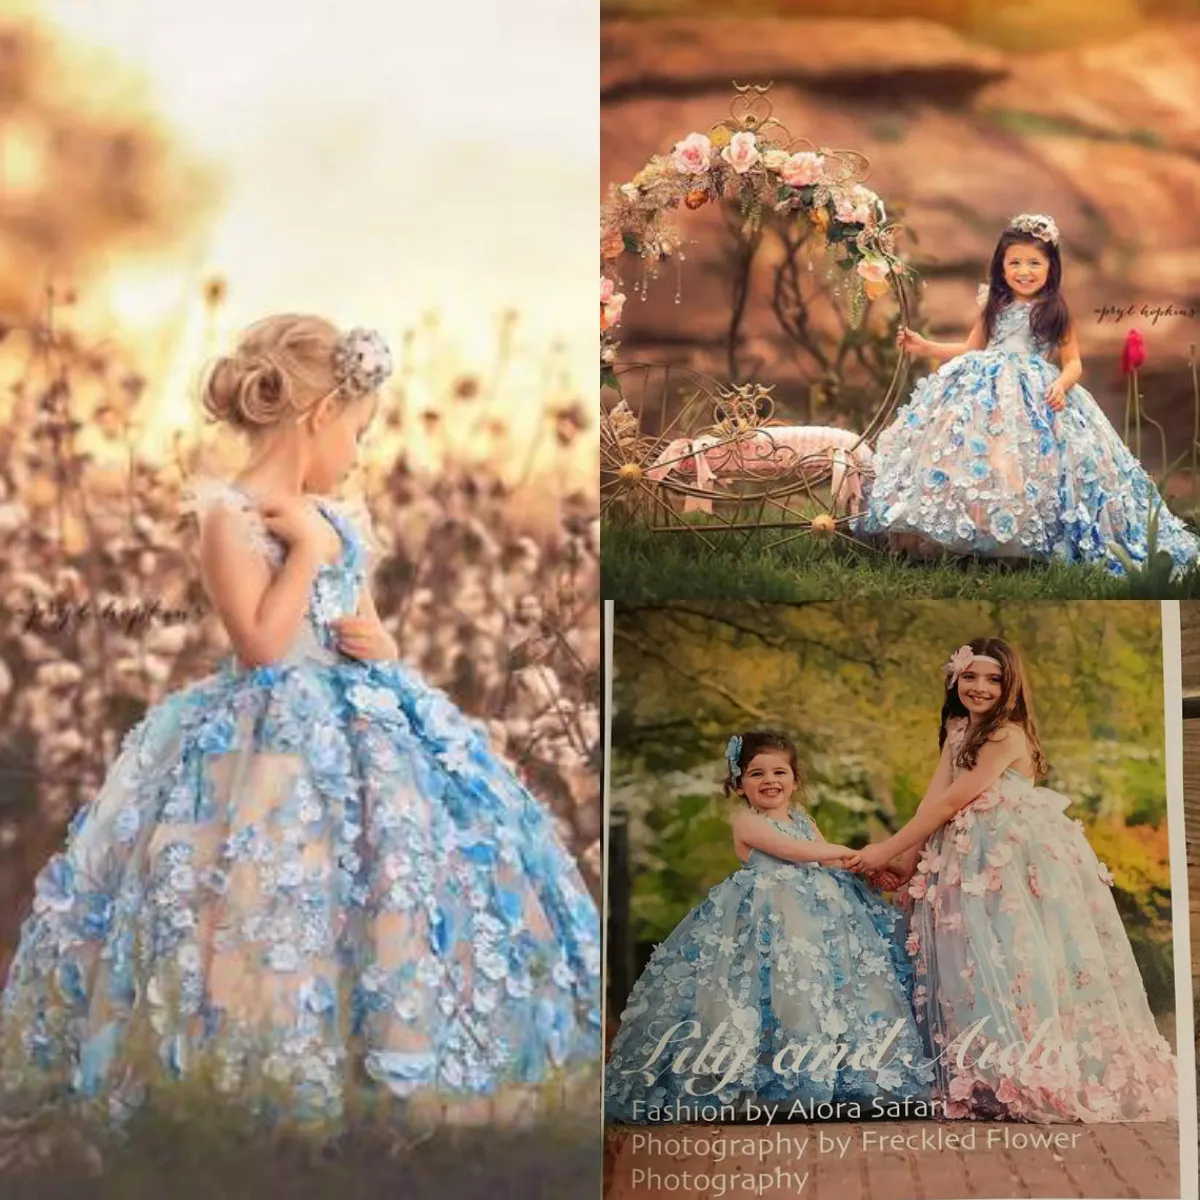 صور حقيقية Blue Princess Flowes فساتين حفلات للفتيات مزينة بالخرز للأطفال الصغار فساتين حفلات أعياد الميلاد وحفلات الزفاف